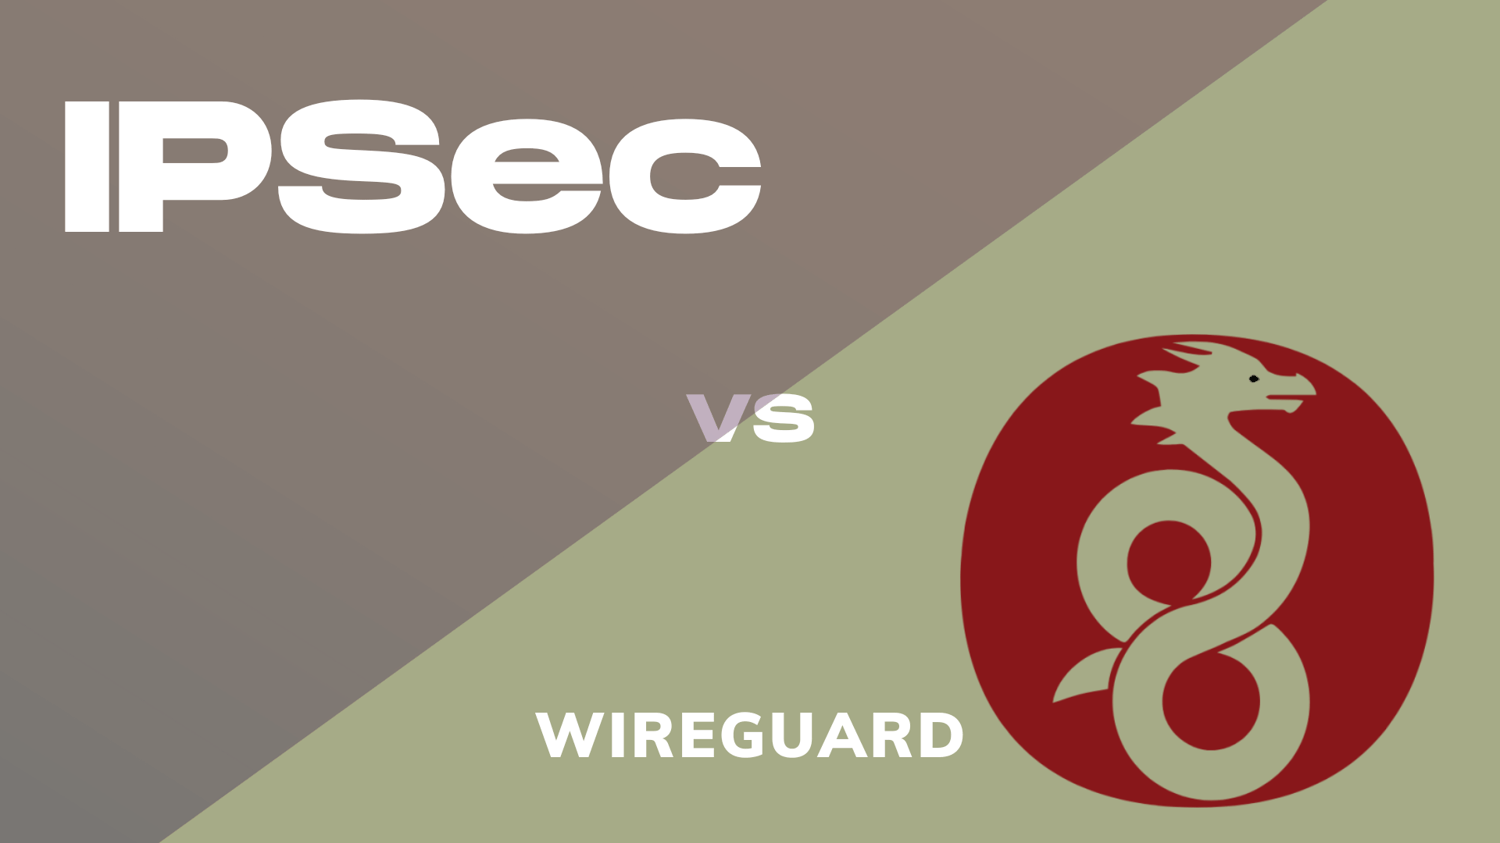 wireguard vs ipsec